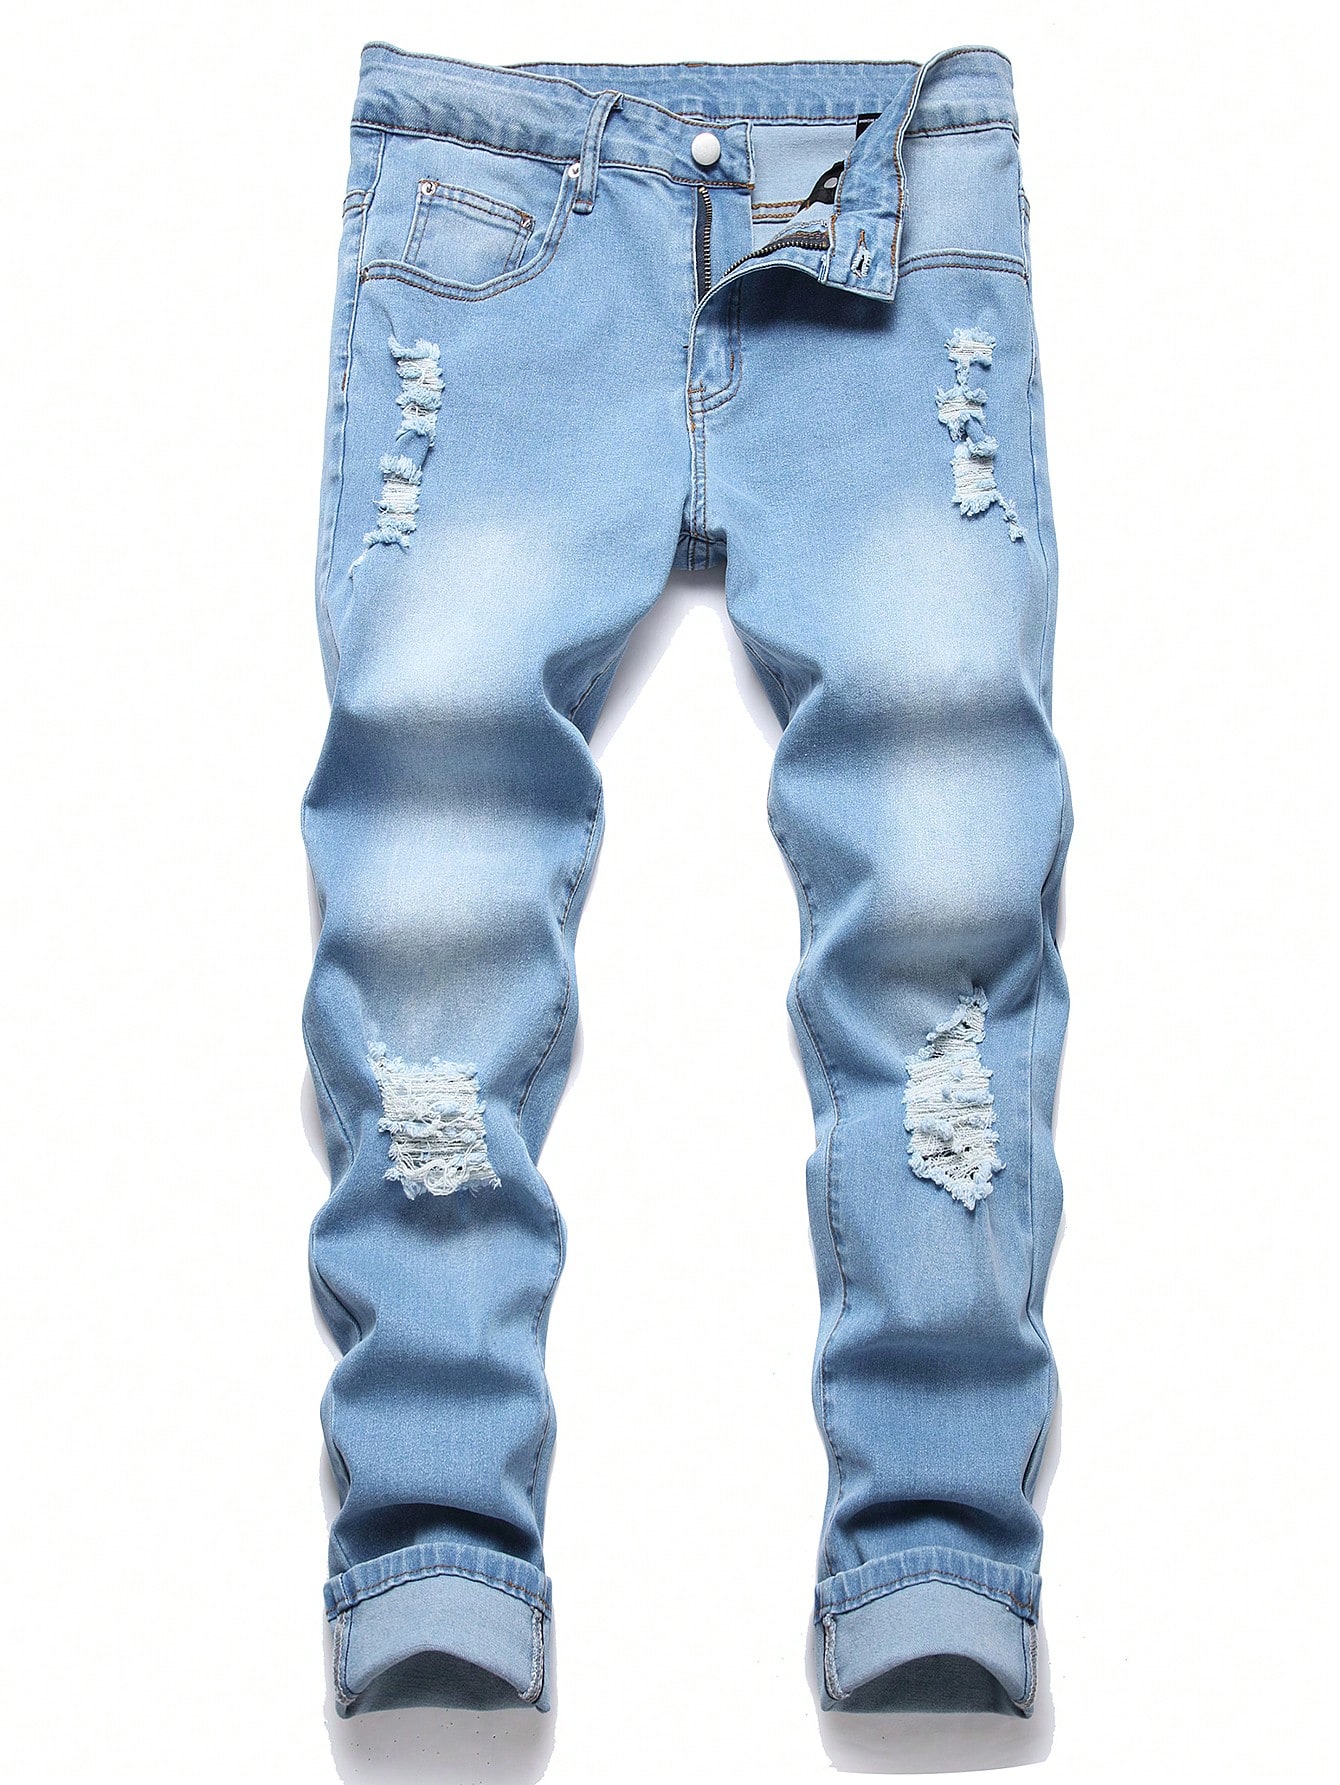 Мужские рваные джинсы скинни Manfinity EMRG, средняя стирка мужские джинсы джинсы с рельефной молнией облегающие брюки мужские джинсы карандаш джинсы скинни для мужчин